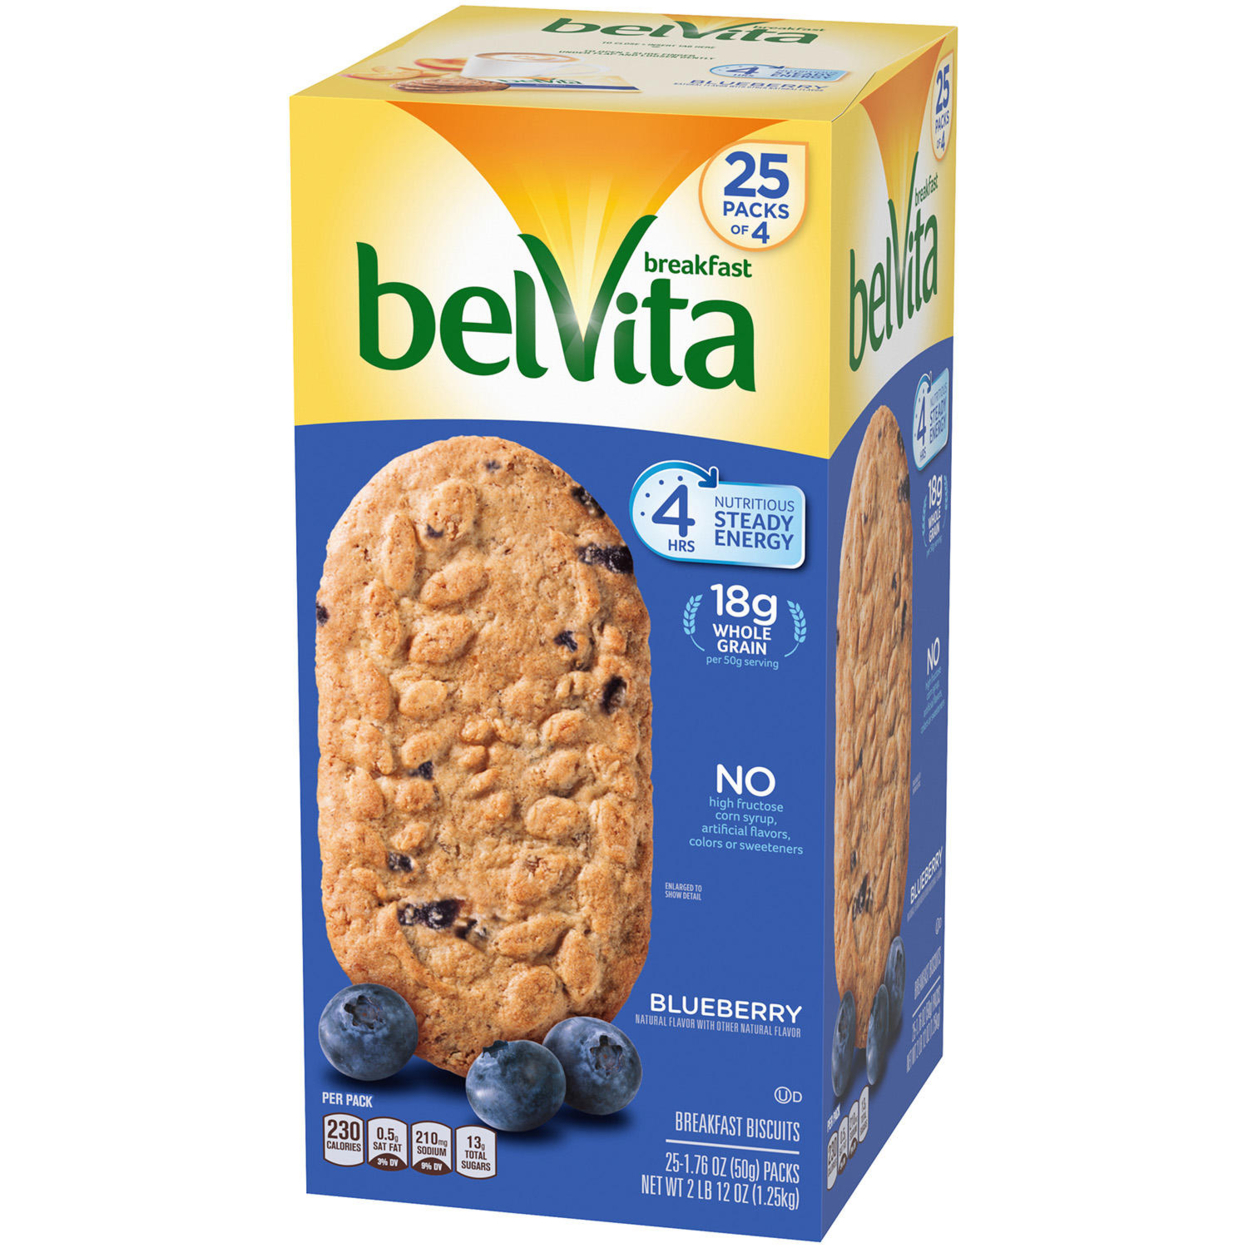 BelVita Blueberry Breakfast Biscuits (25 Pack)